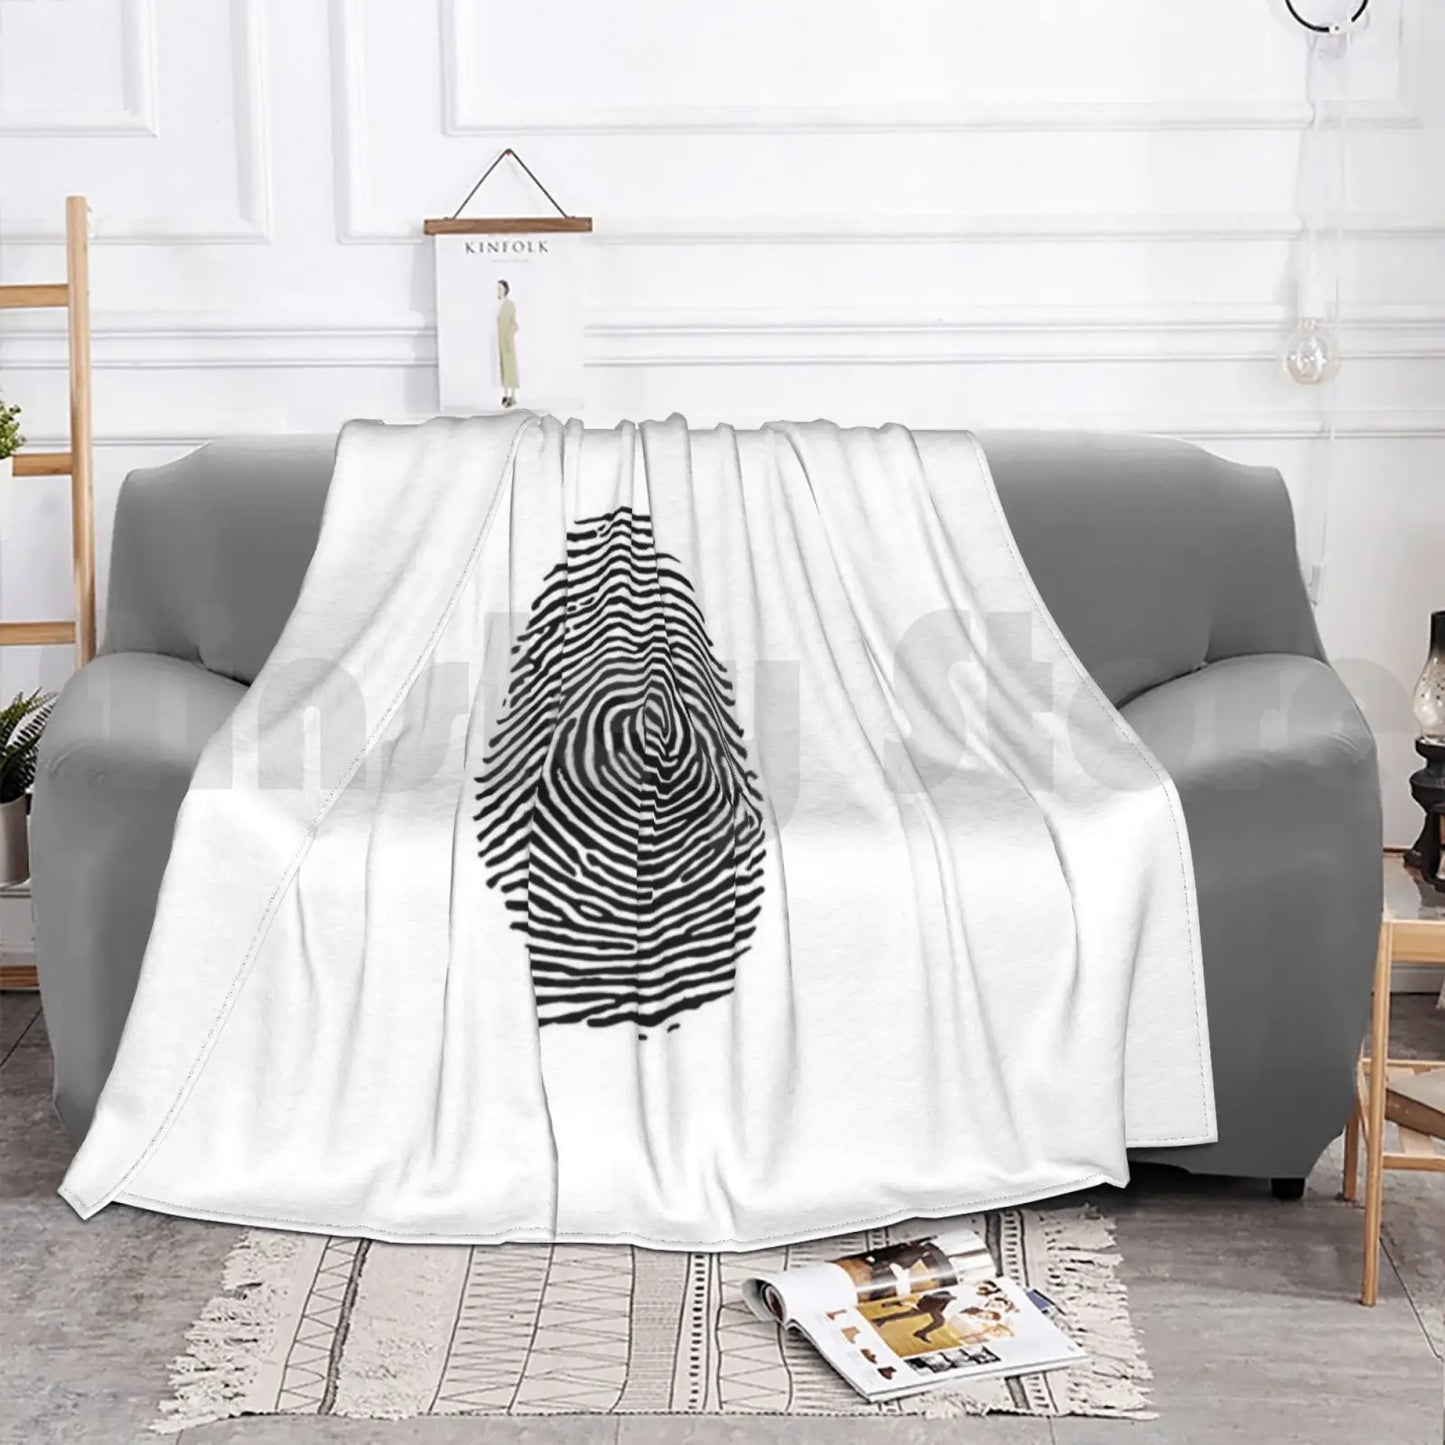 Blanket - Fingerprint Blanket